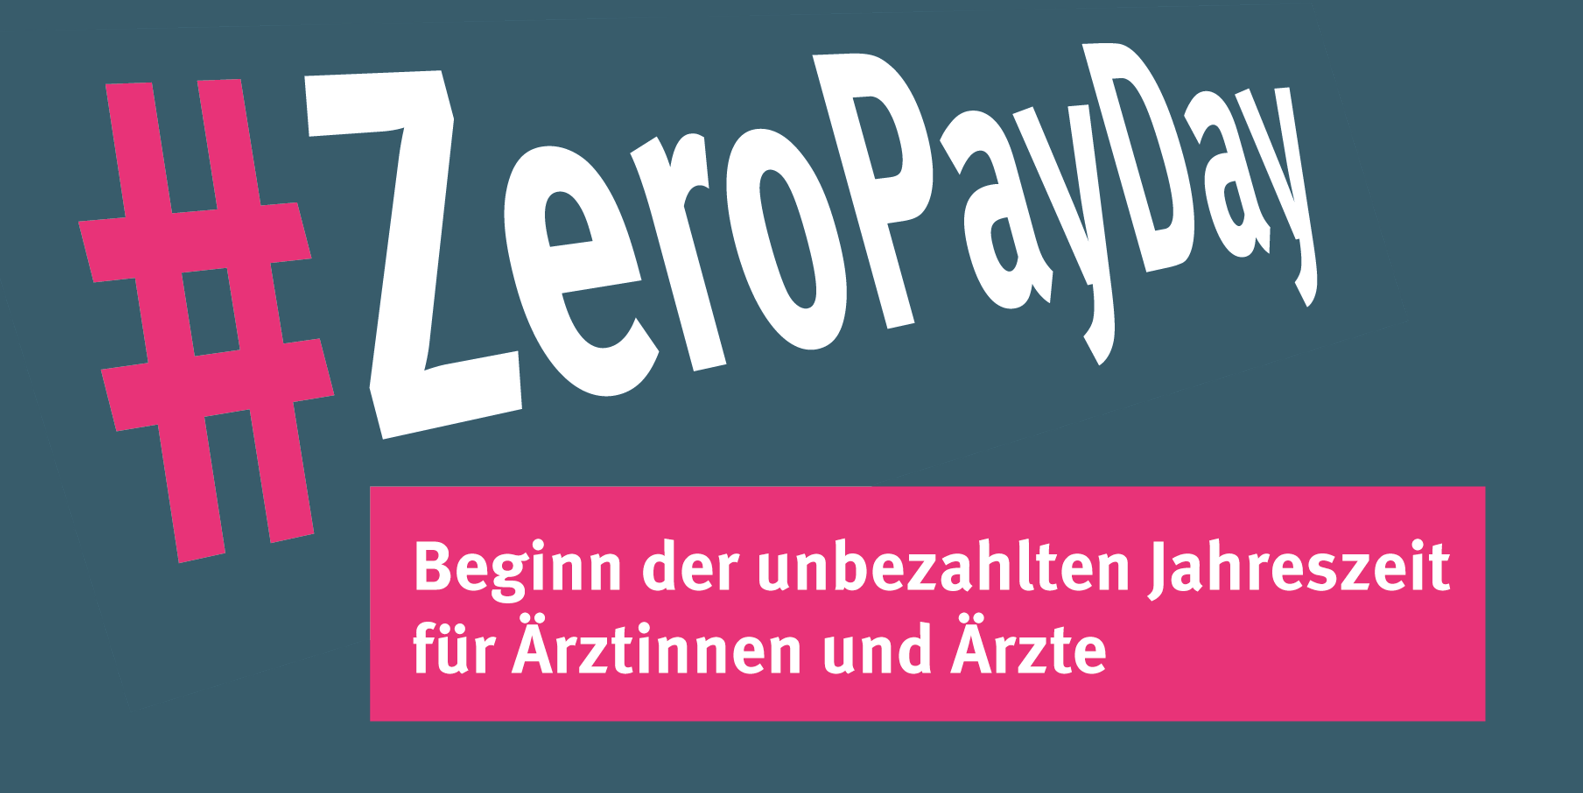 Zero Pay Day – Beginn der unbezahlten Jahreszeit für Praxen